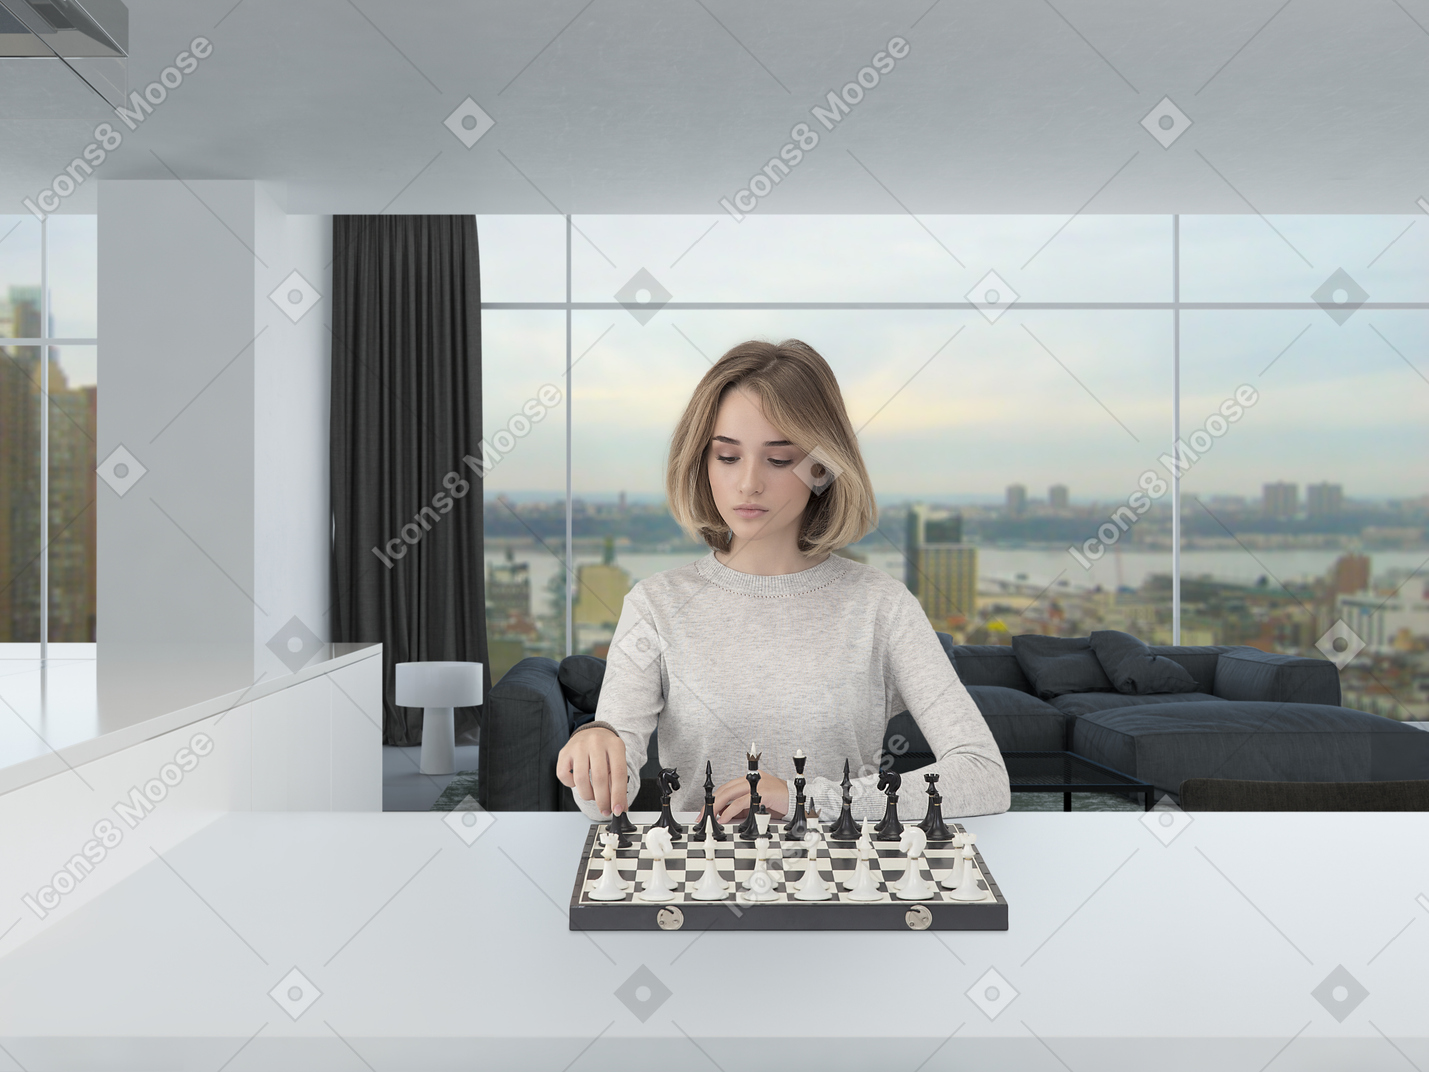 Hermosa mujer joven en un jersey gris claro que parece concentrado mientras juega al ajedrez en una espaciosa habitación de aspecto moderno